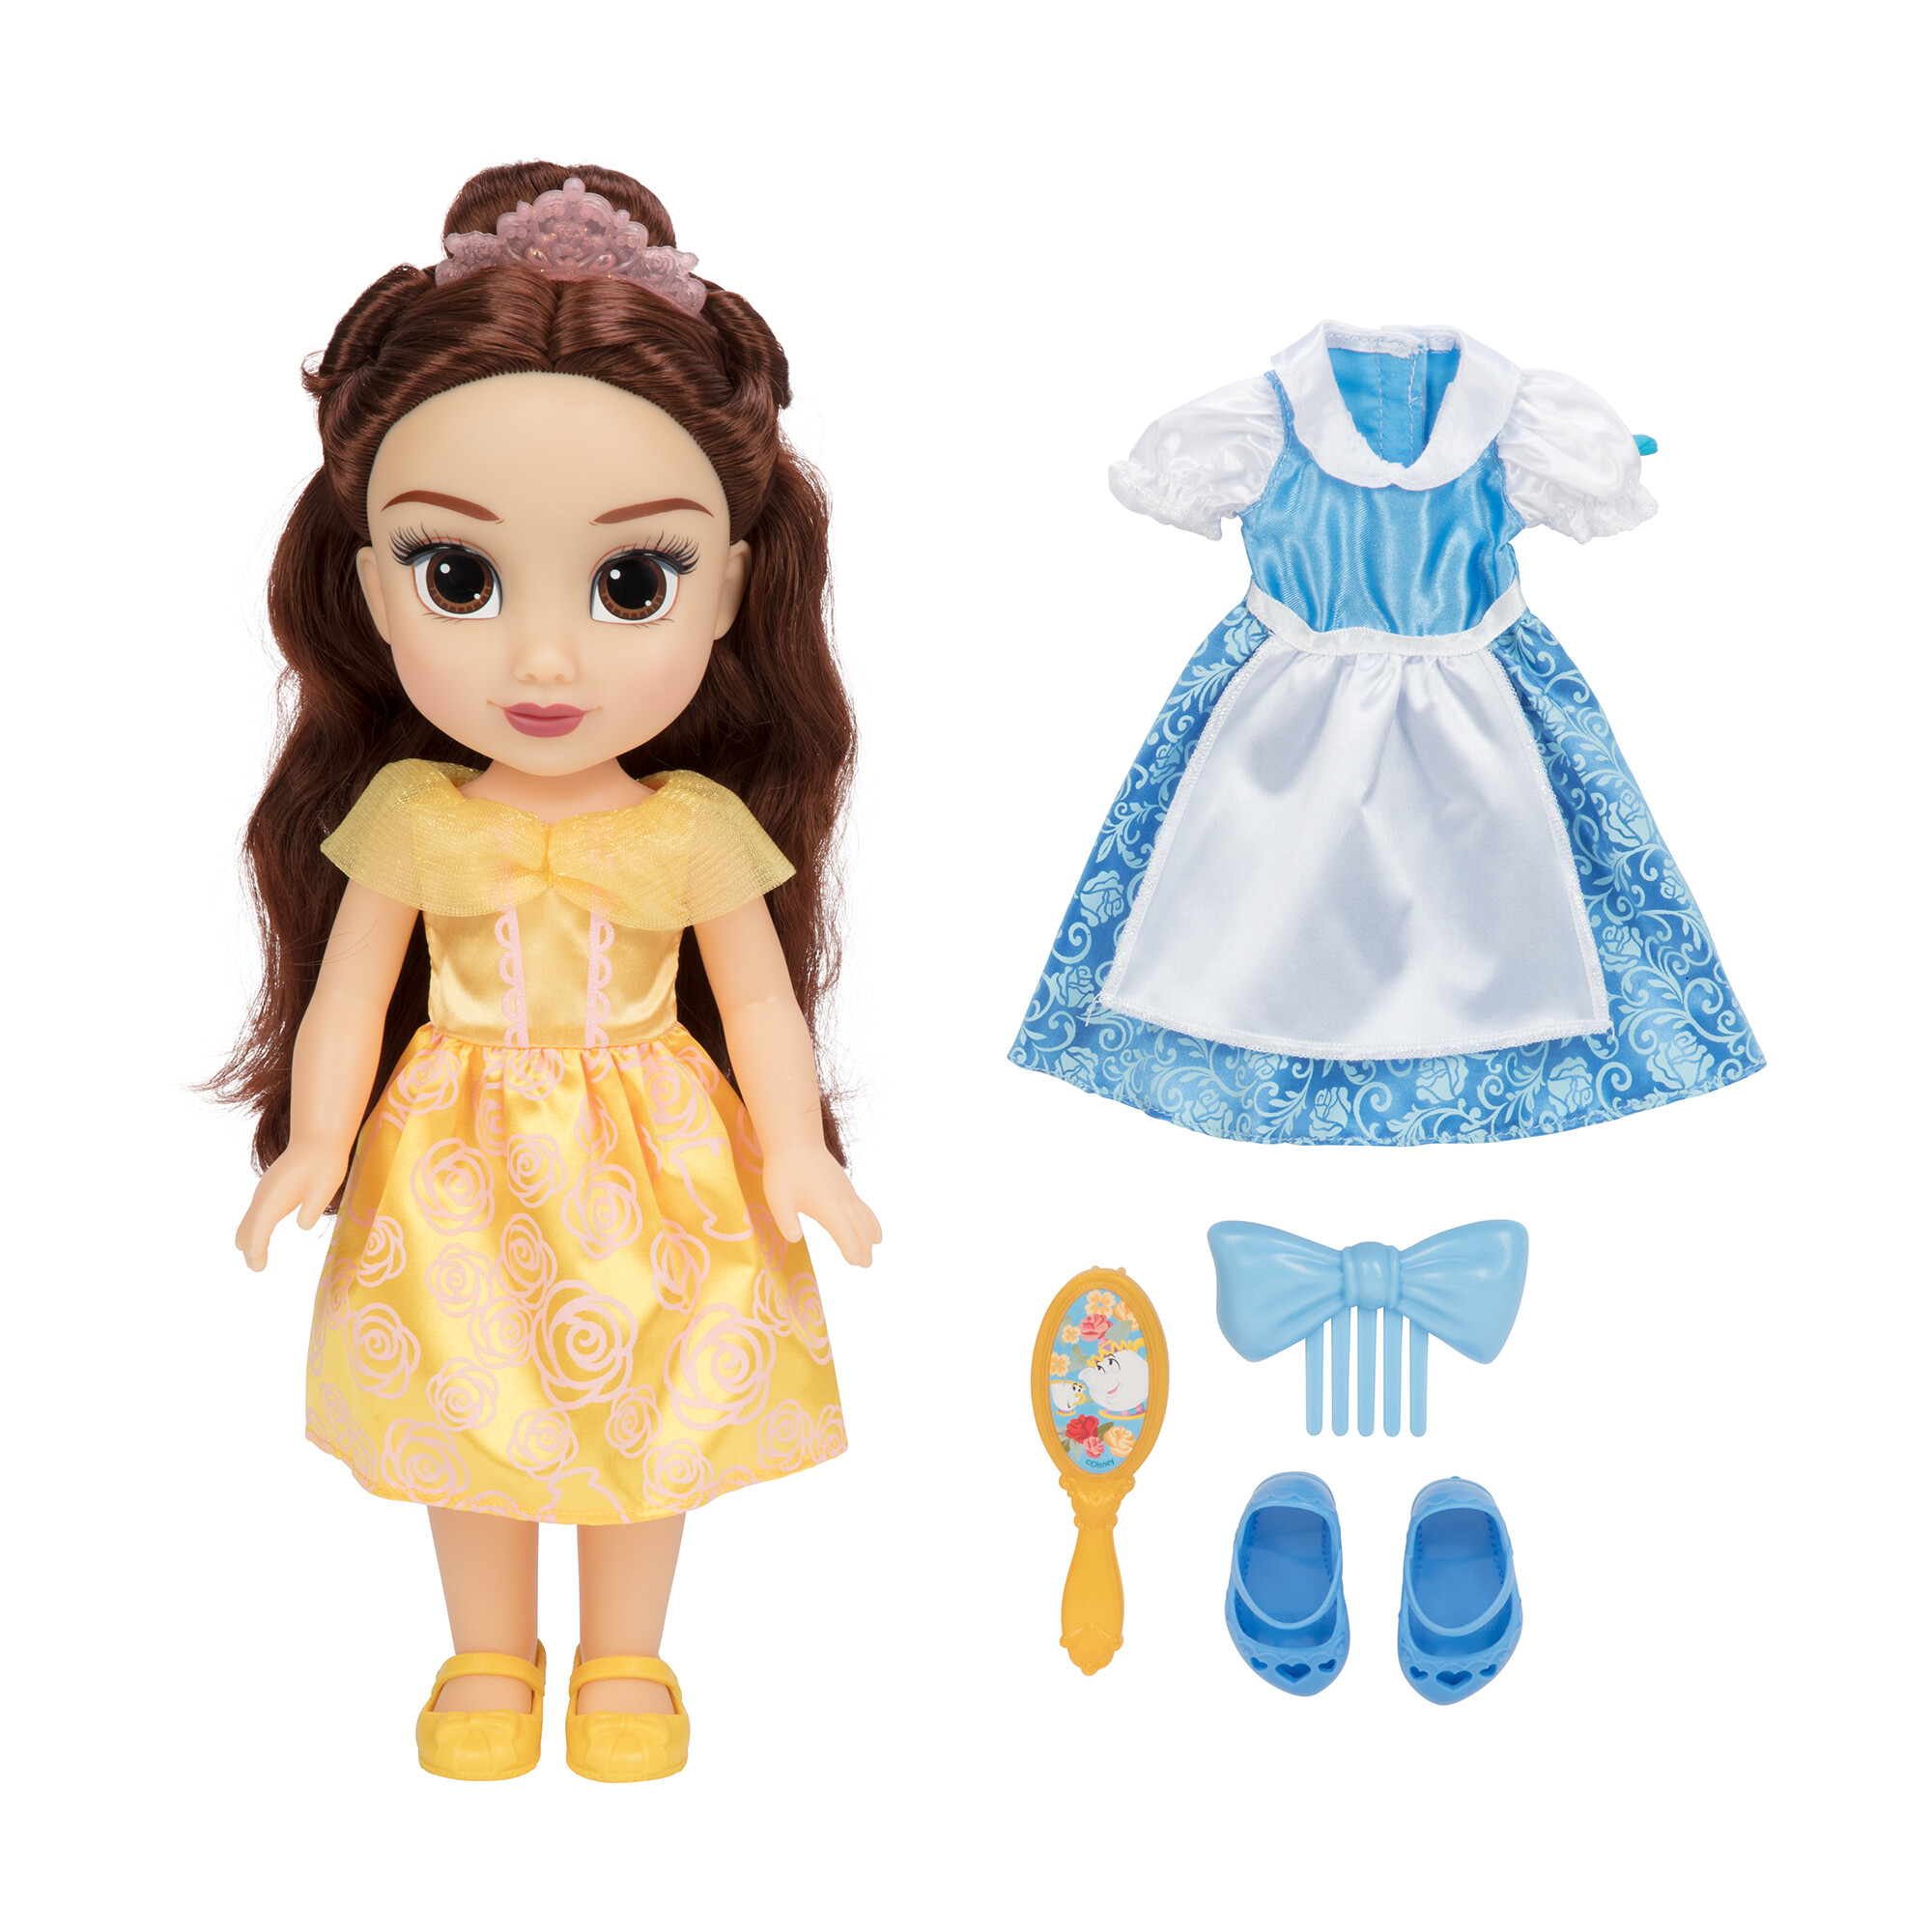 Disney princess bambola da 38 cm di belle con accessori - DISNEY PRINCESS